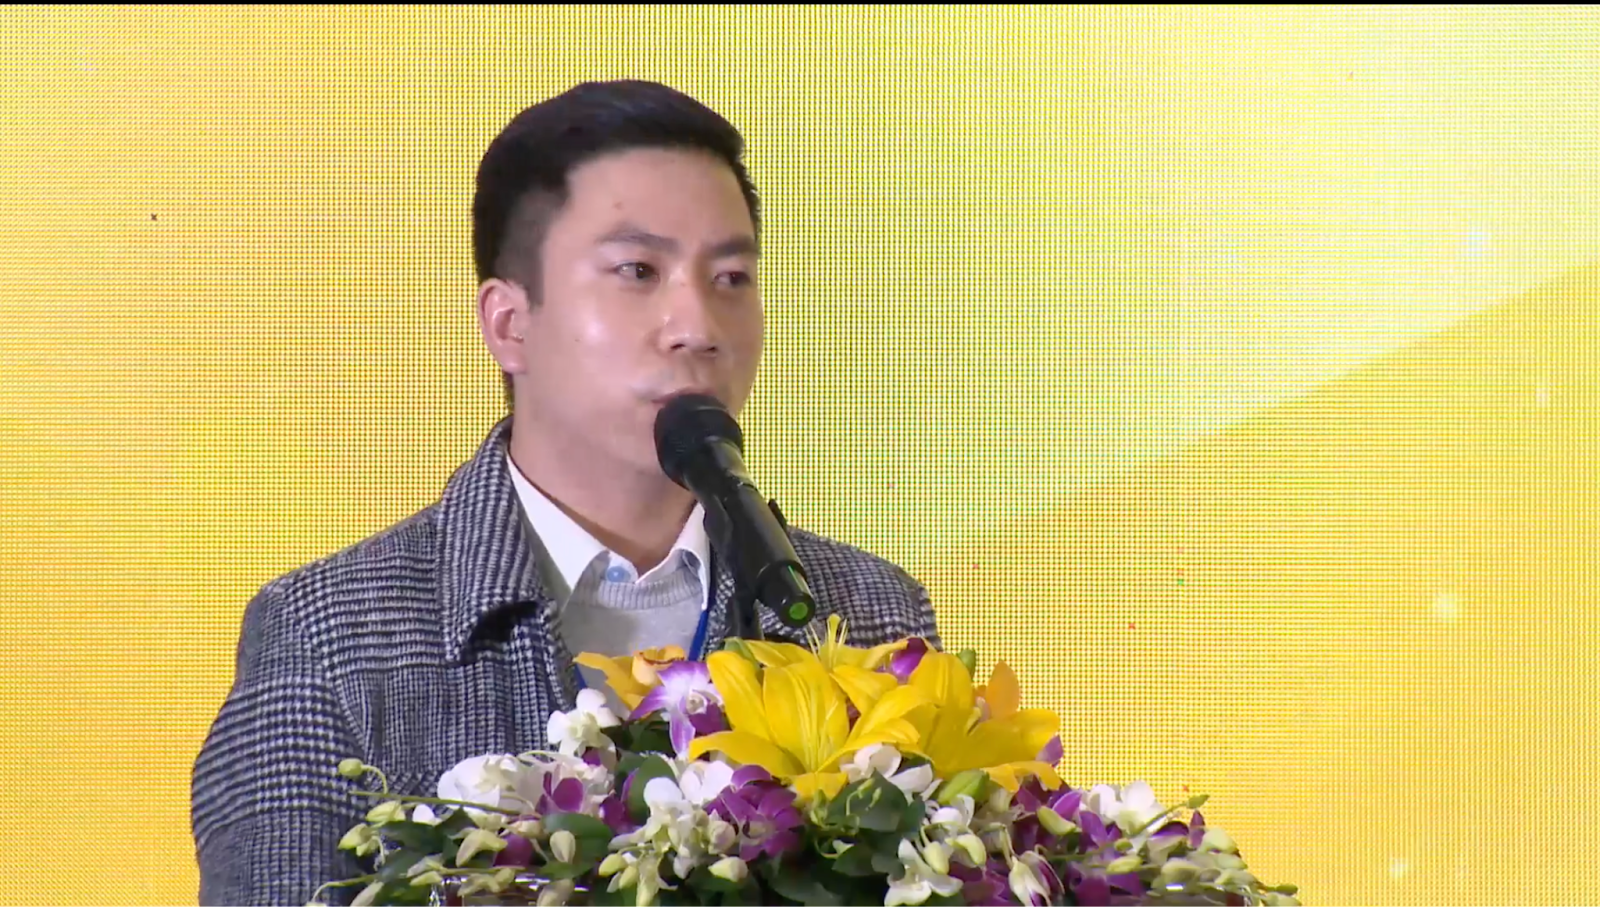 Anh Phan Kế Sơn - Cựu học viên Thạc sĩ ngành Phát triển Thuốc năm 2020 tại USTH phát biểu tại buổi lễ